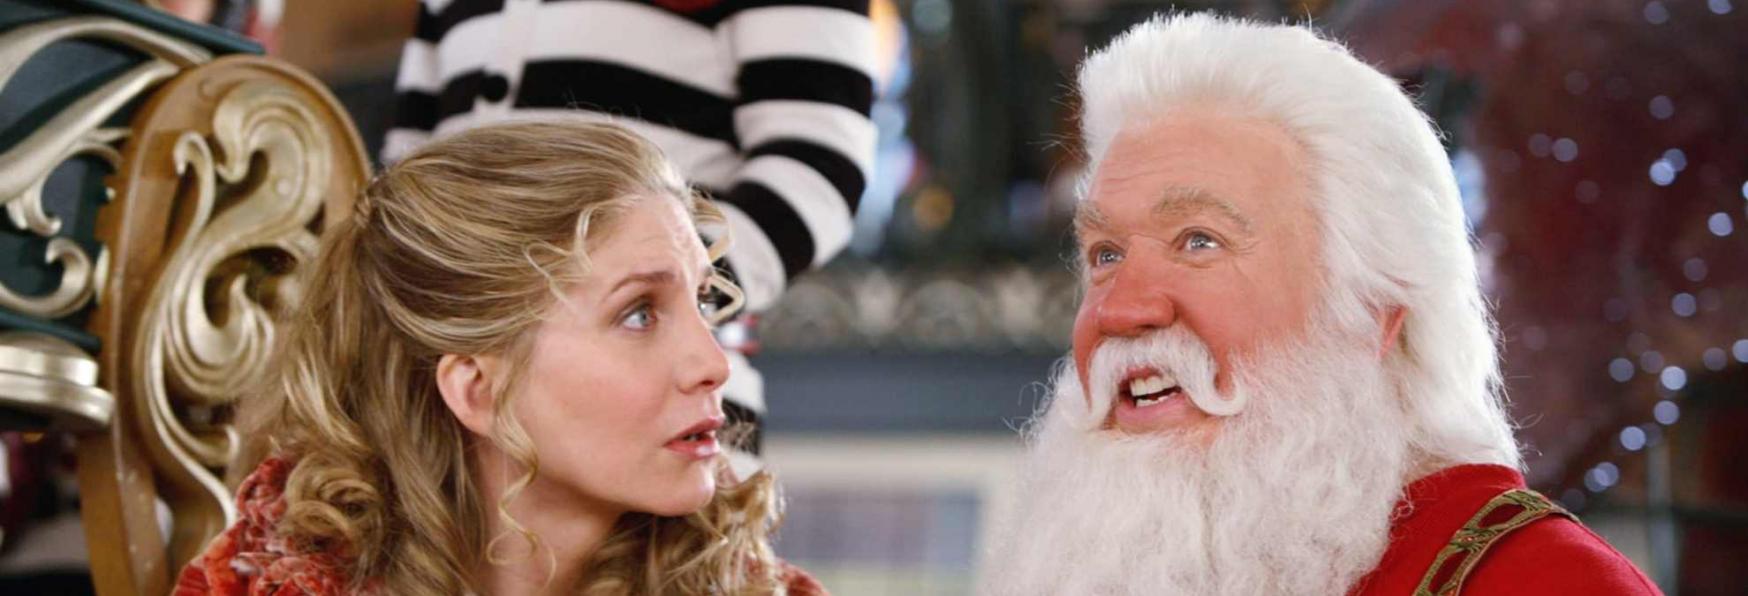 The Santa Clauses: le Prime Immagini della Serie TV in arrivo su Disney+